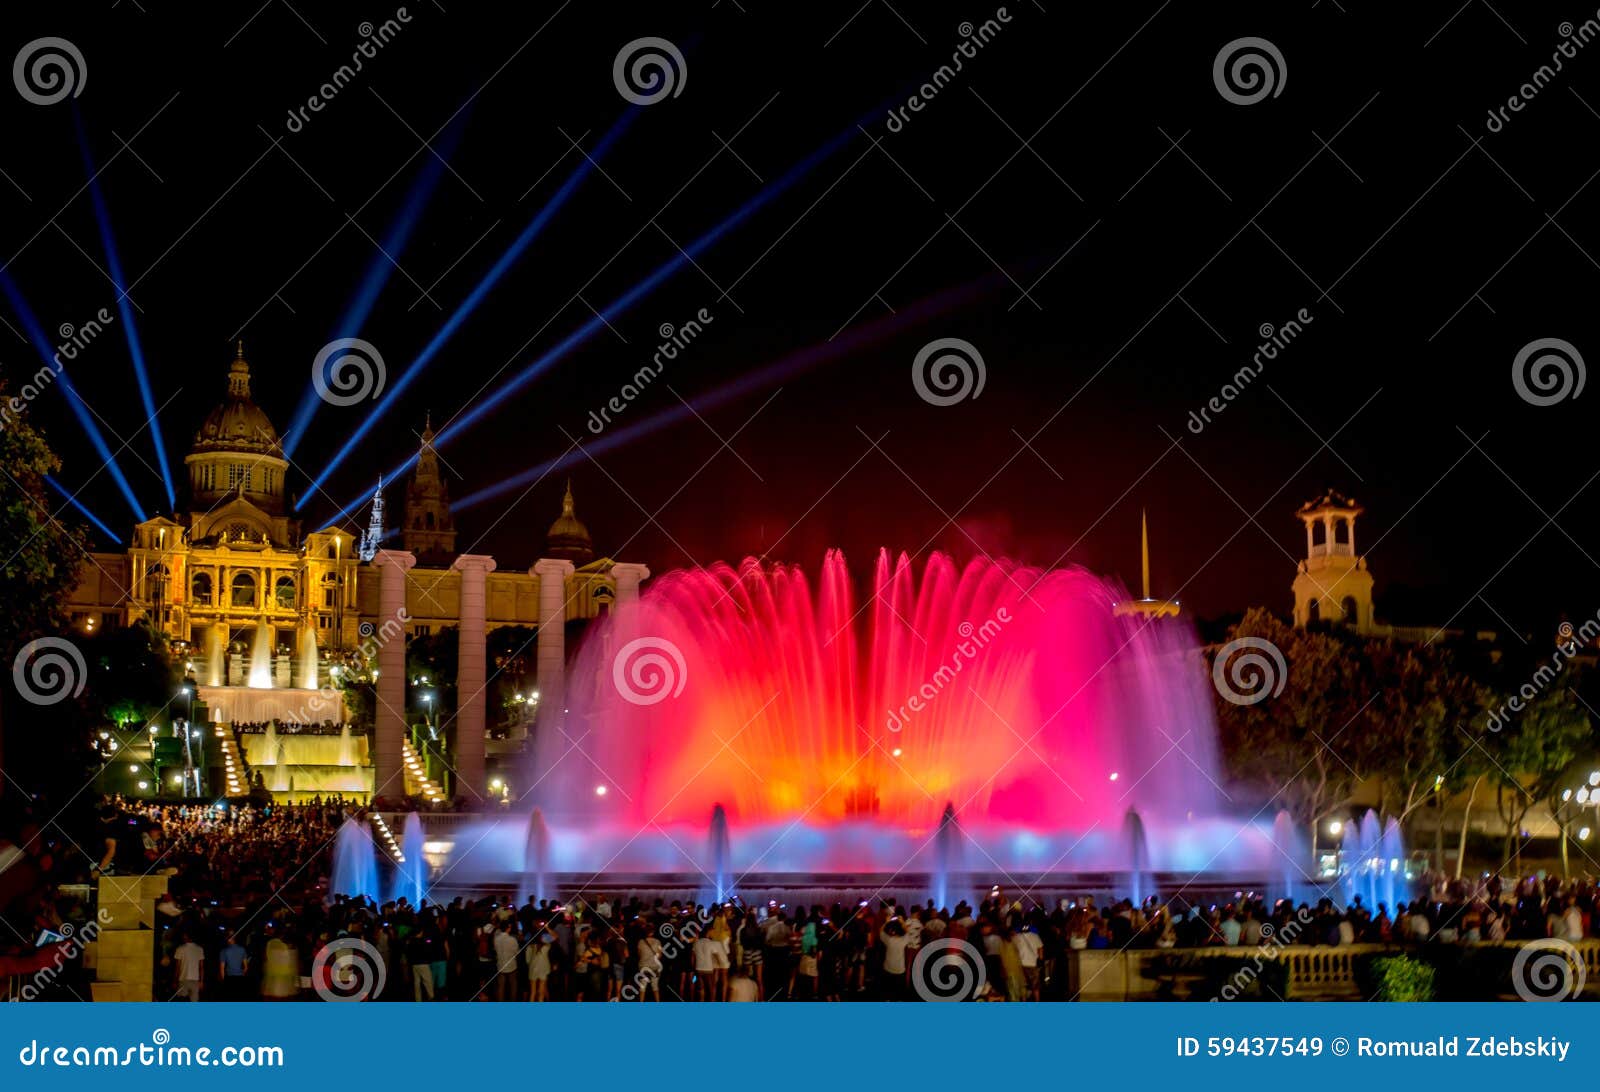 magic fountain of montjuÃÂ¯c in barcelona at night